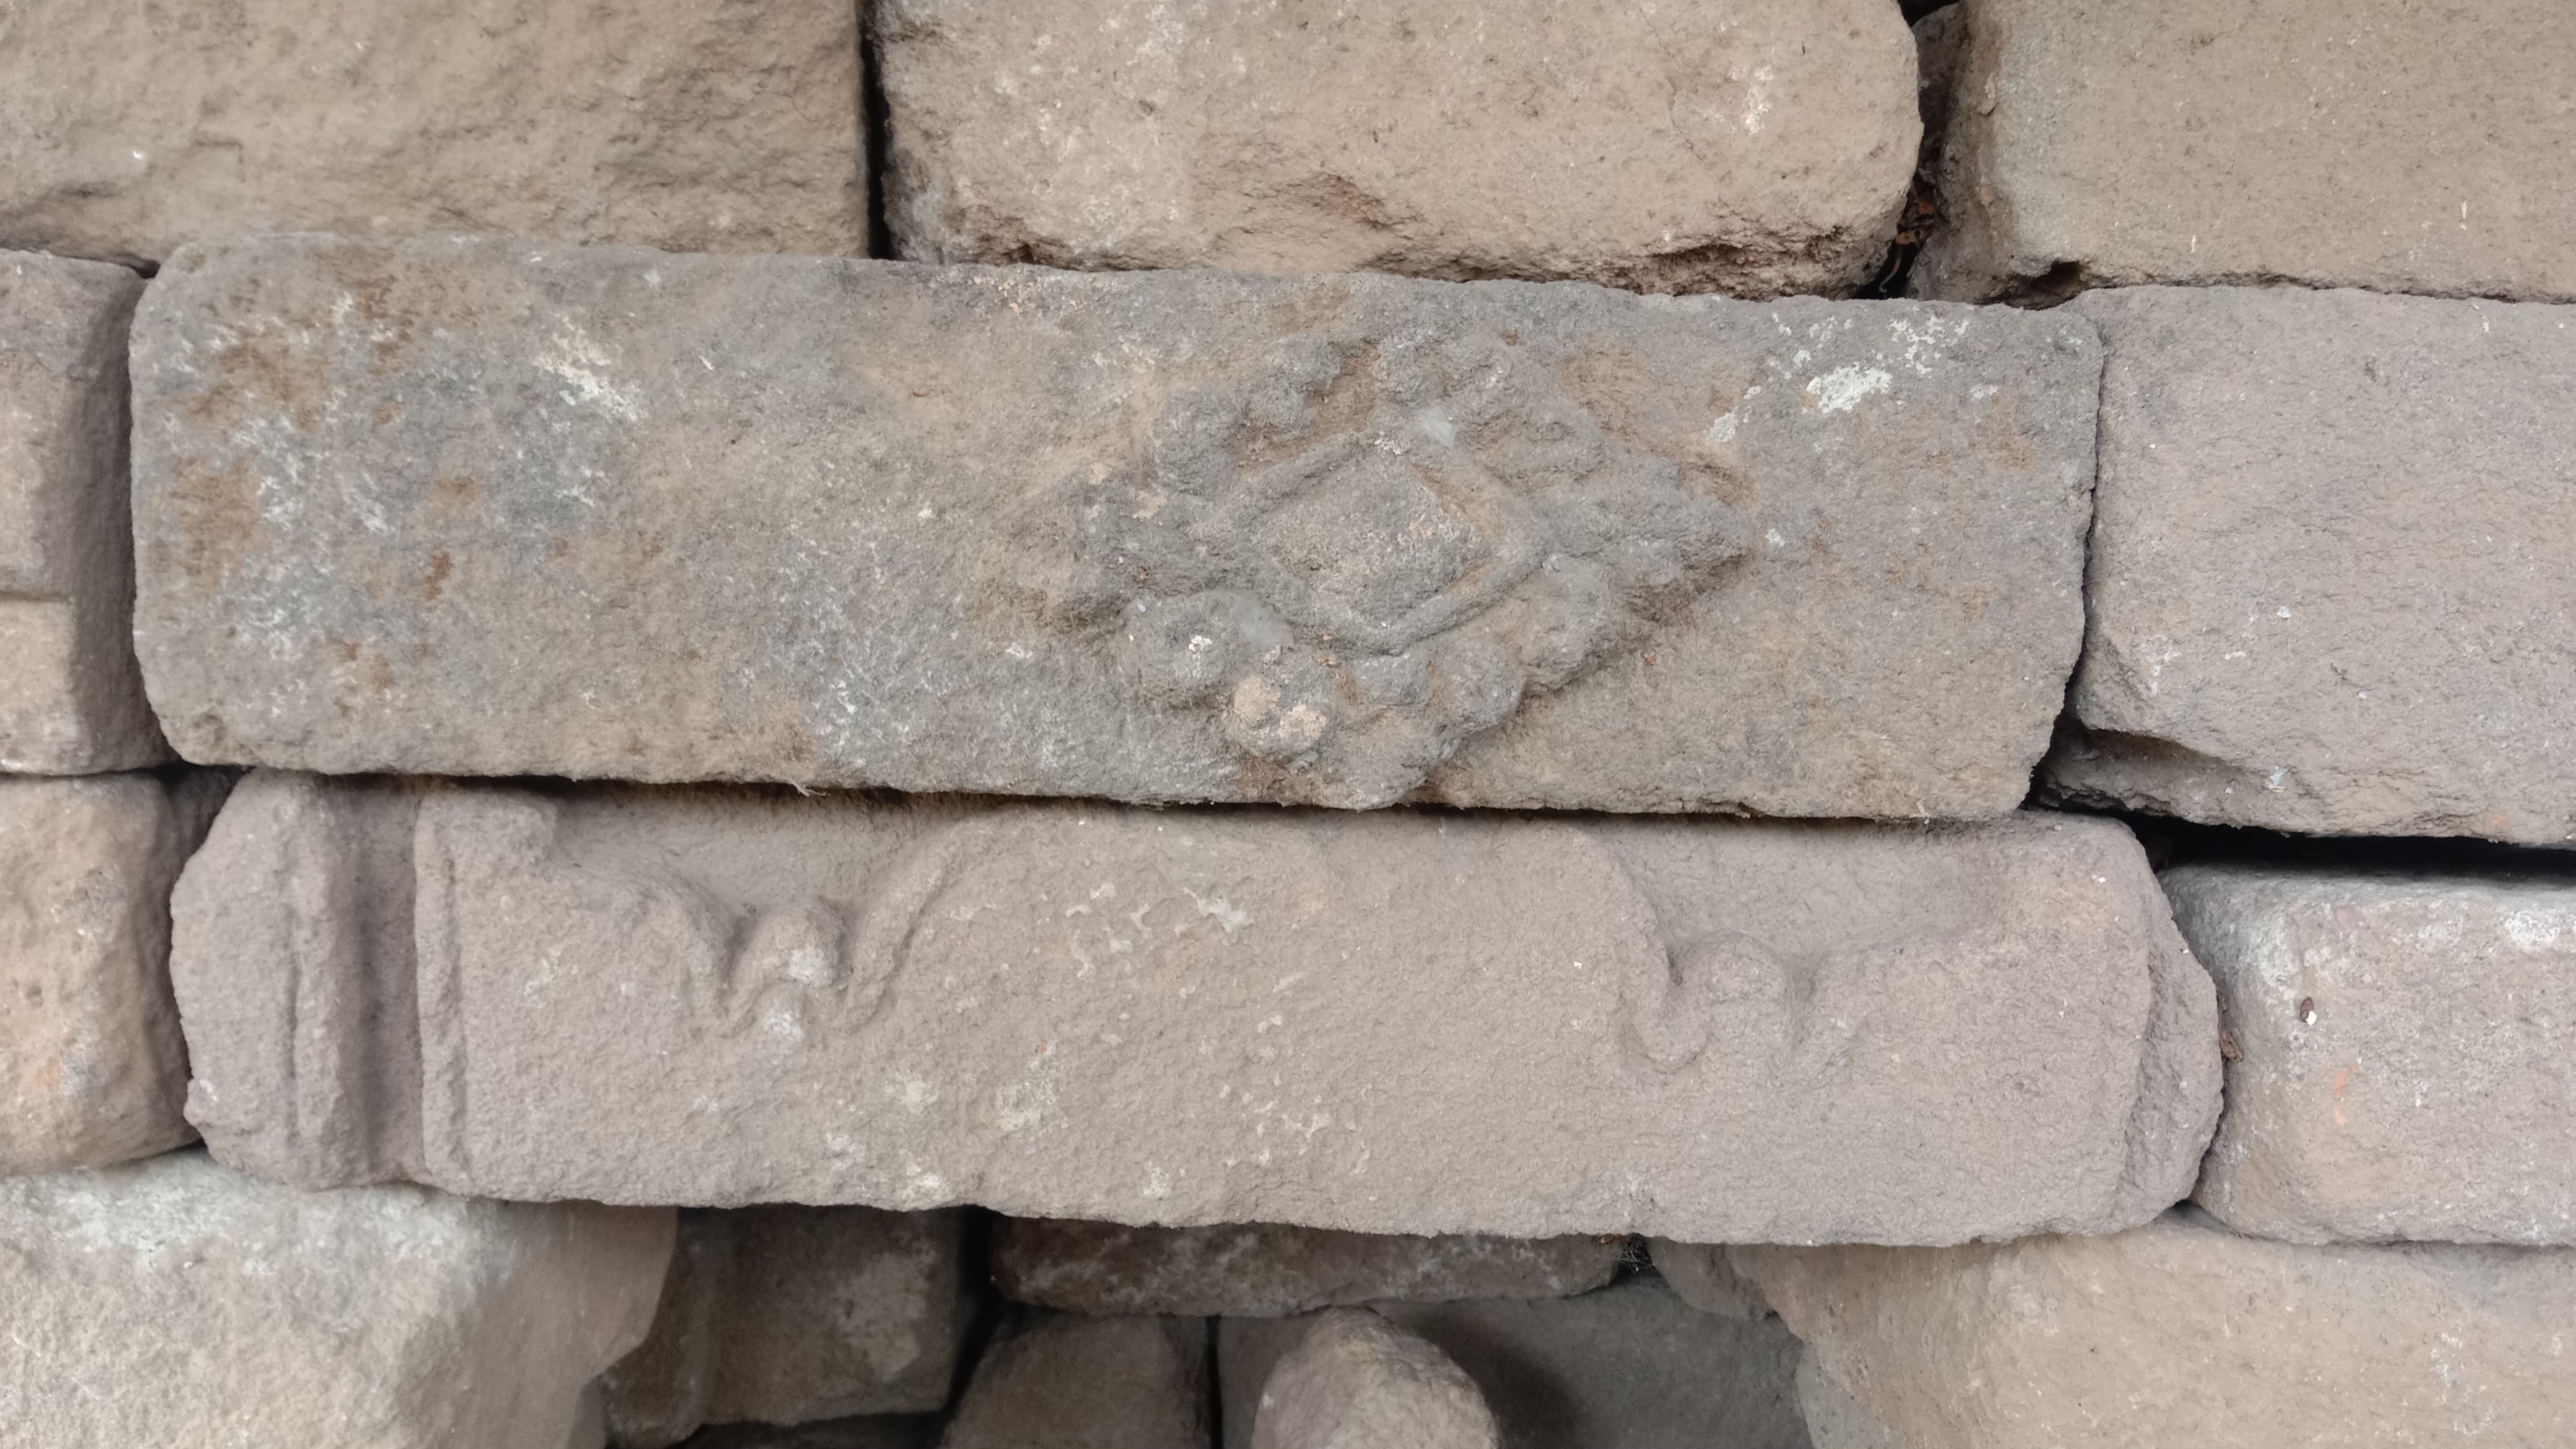 Gambar 1. Batu dengan relief motif hiasan belah ketupatSumber: Dokumentasi oleh Shofwatul Qolbiyah